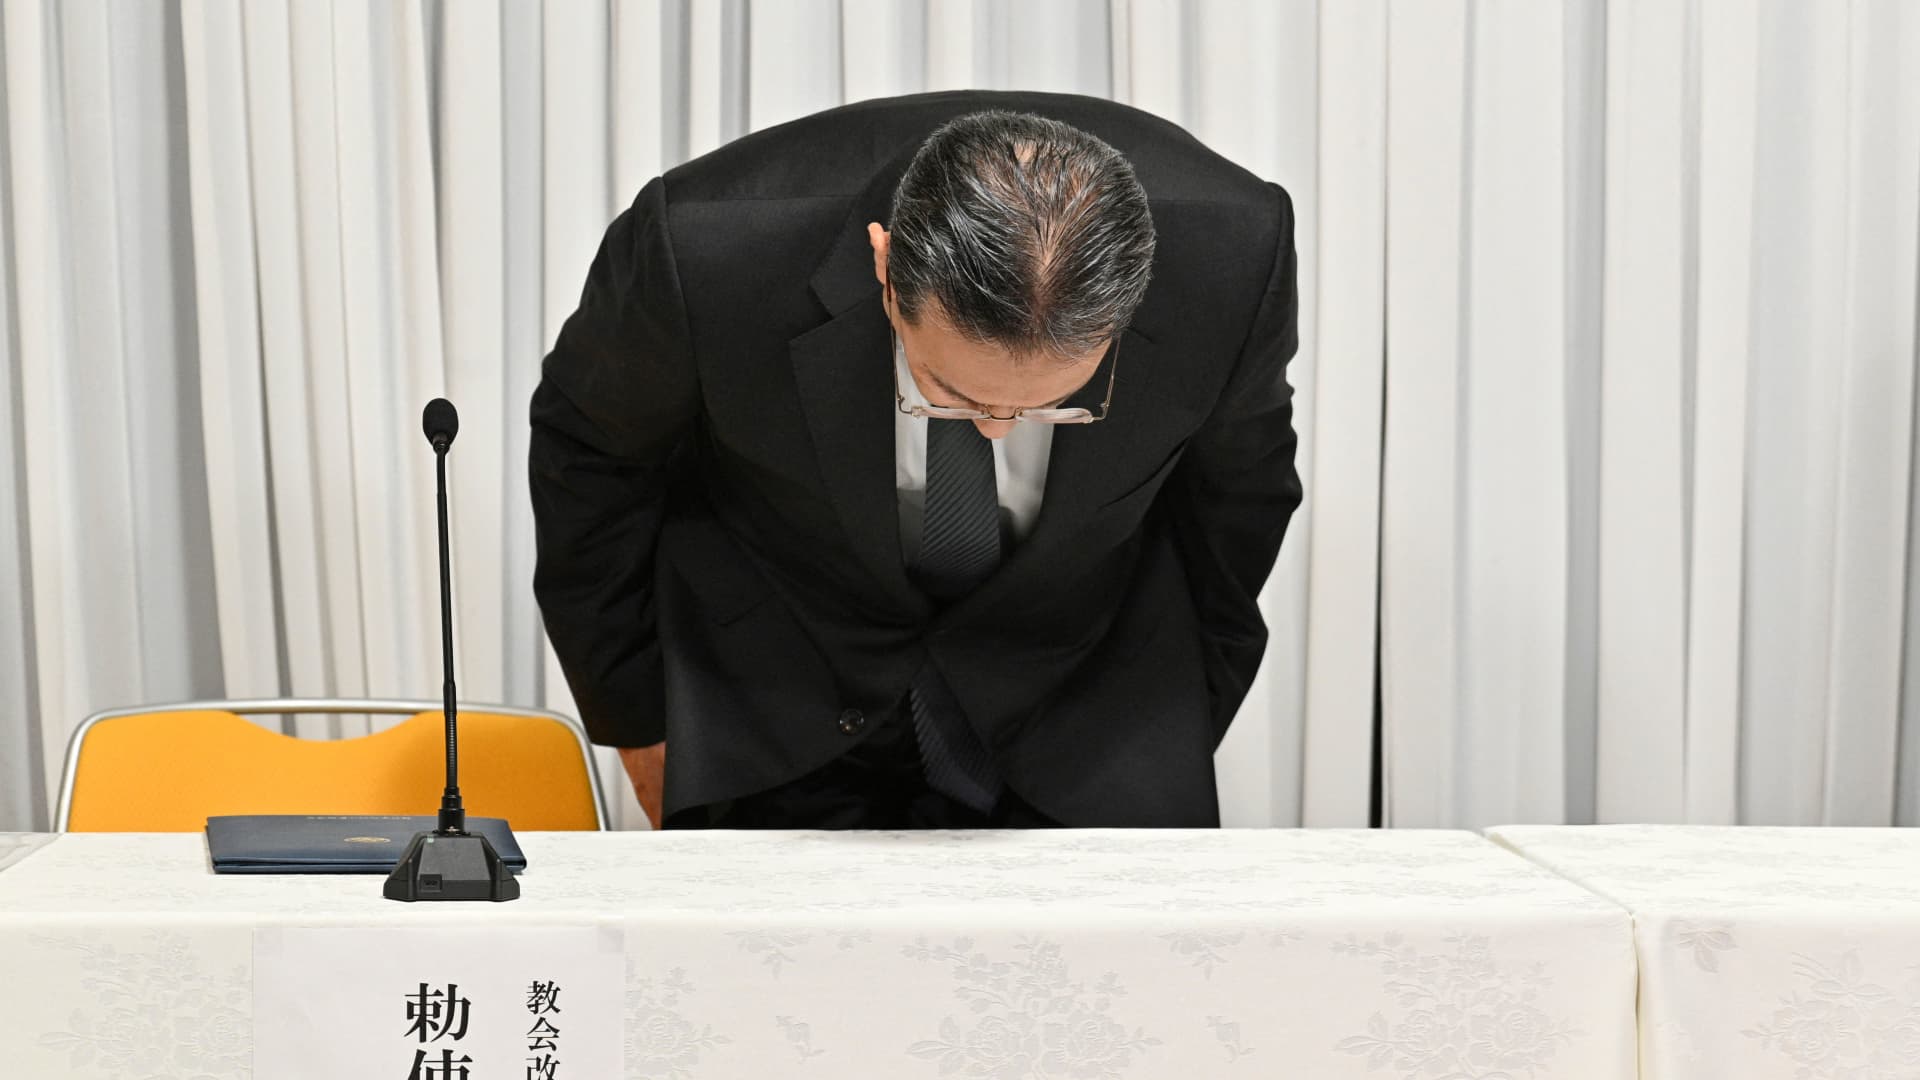 नया जापान कानून यूनिफिकेशन चर्च के धन उगाहने वाले दुरुपयोग को लक्षित करता है